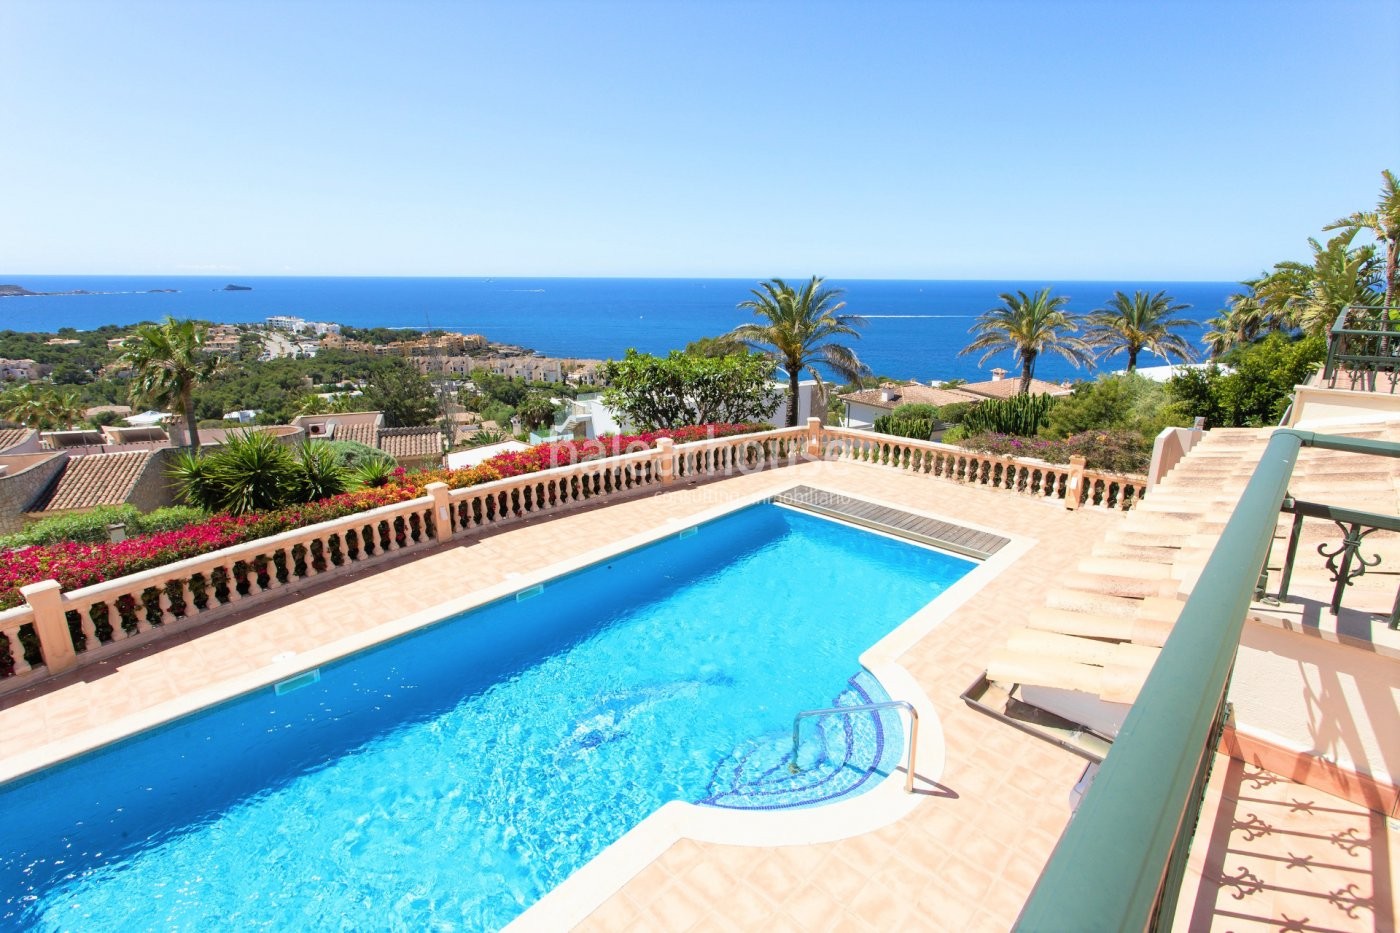 Villa de estilo mediterraneo con vistas espectaculares al mar y al paisaje en Santa Ponsa